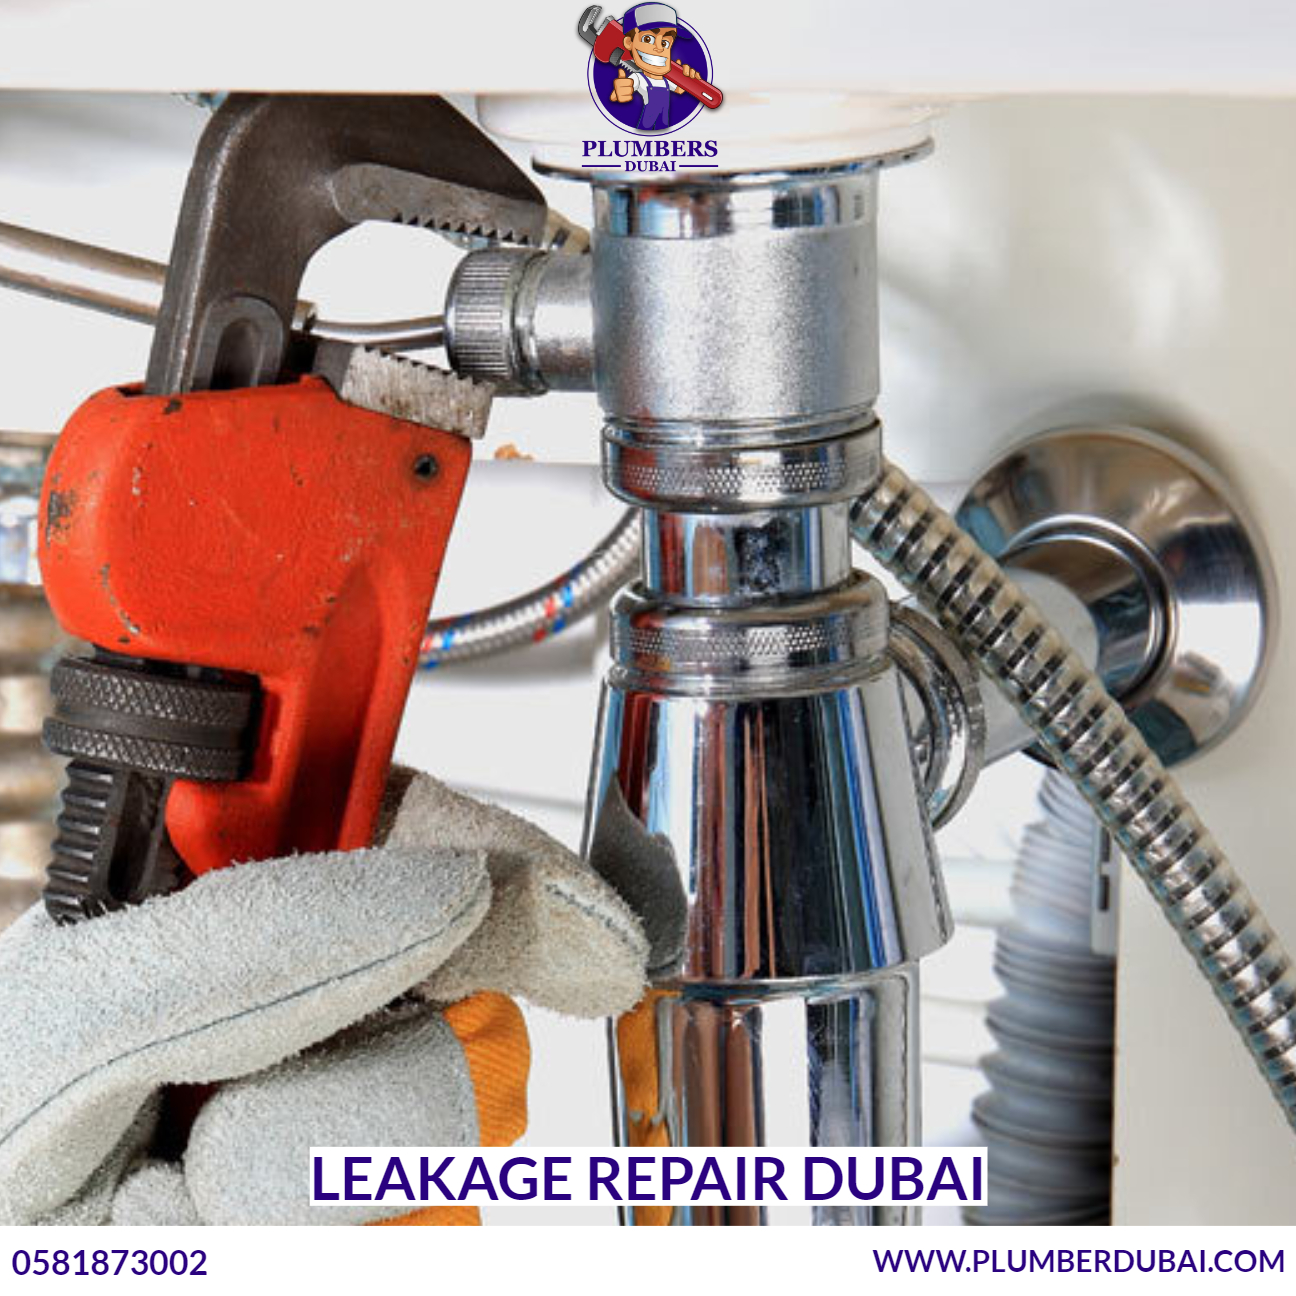 Leakage Repair Dubai